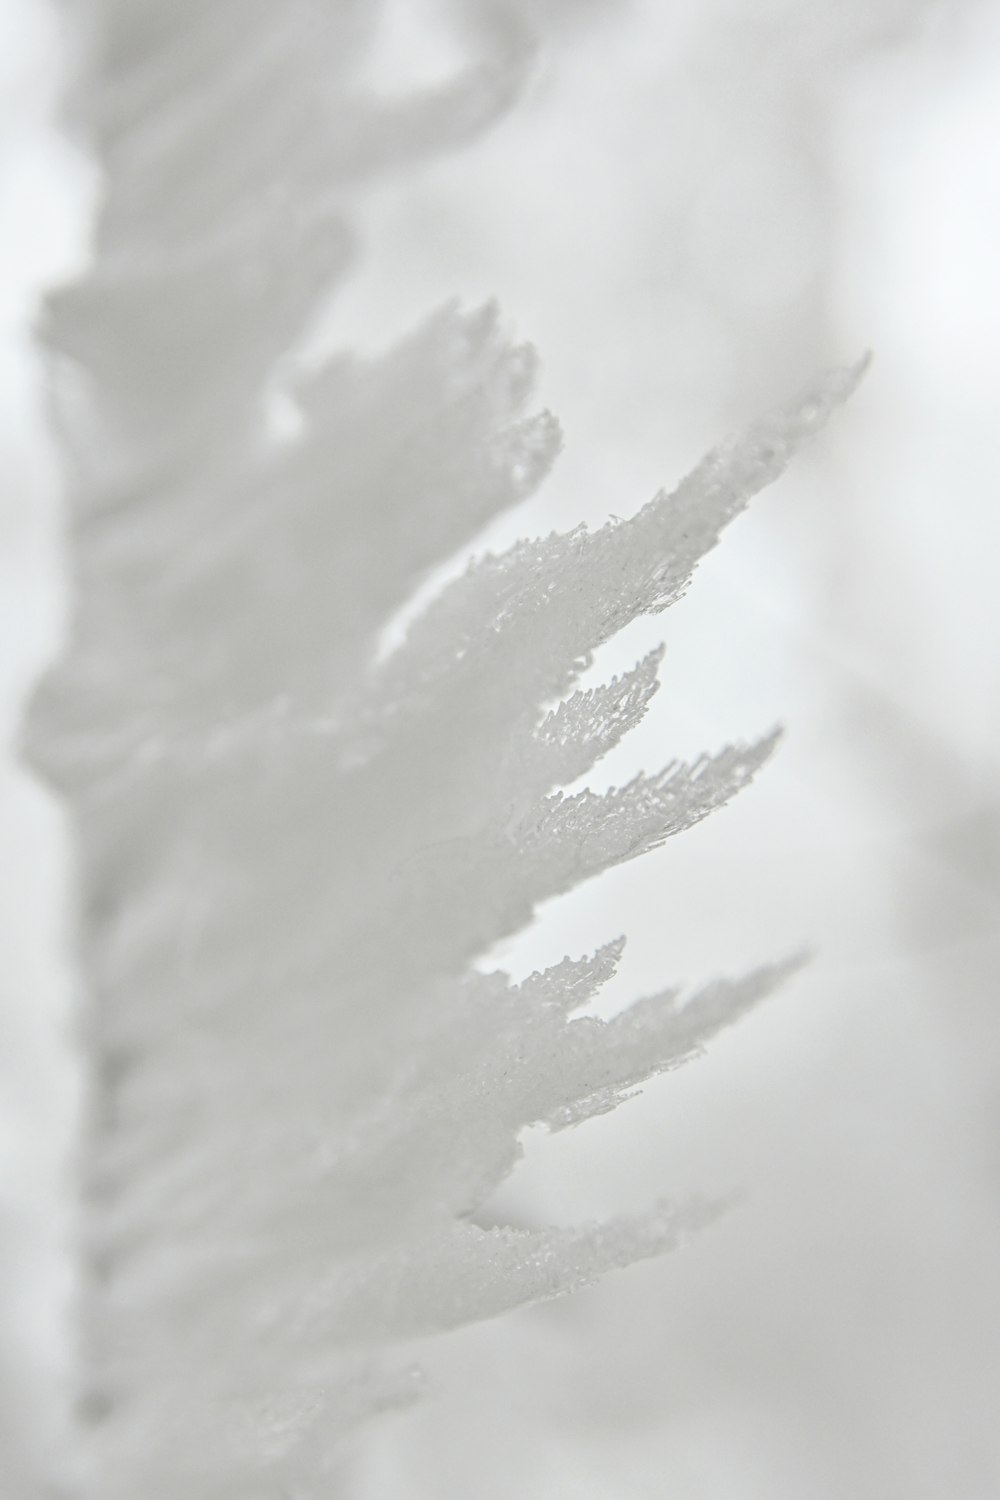 white snow on white background photo – Free Grey Image on Unsplash